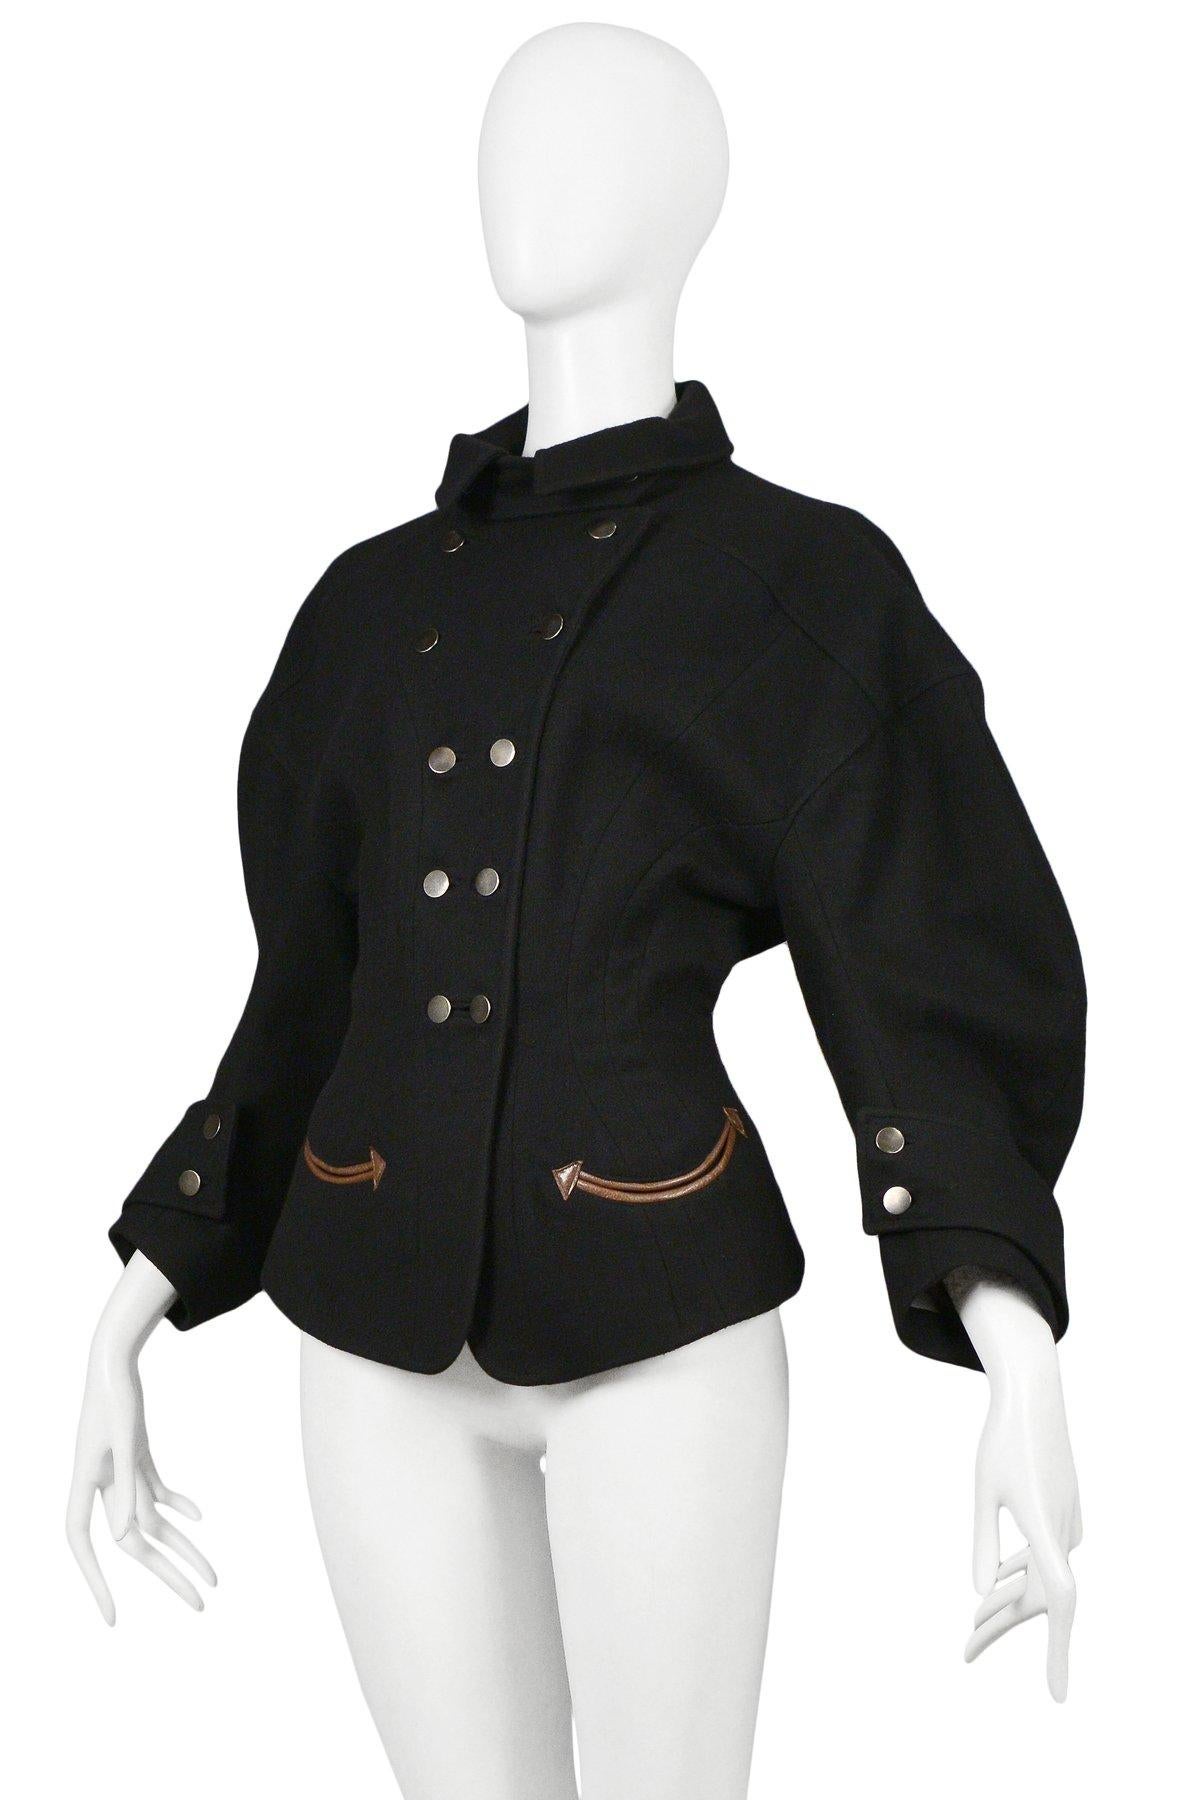 Balenciaga by Nicolas Ghesquiere Black Western Inspired Jacket 2003 In Good Condition In Los Angeles, CA